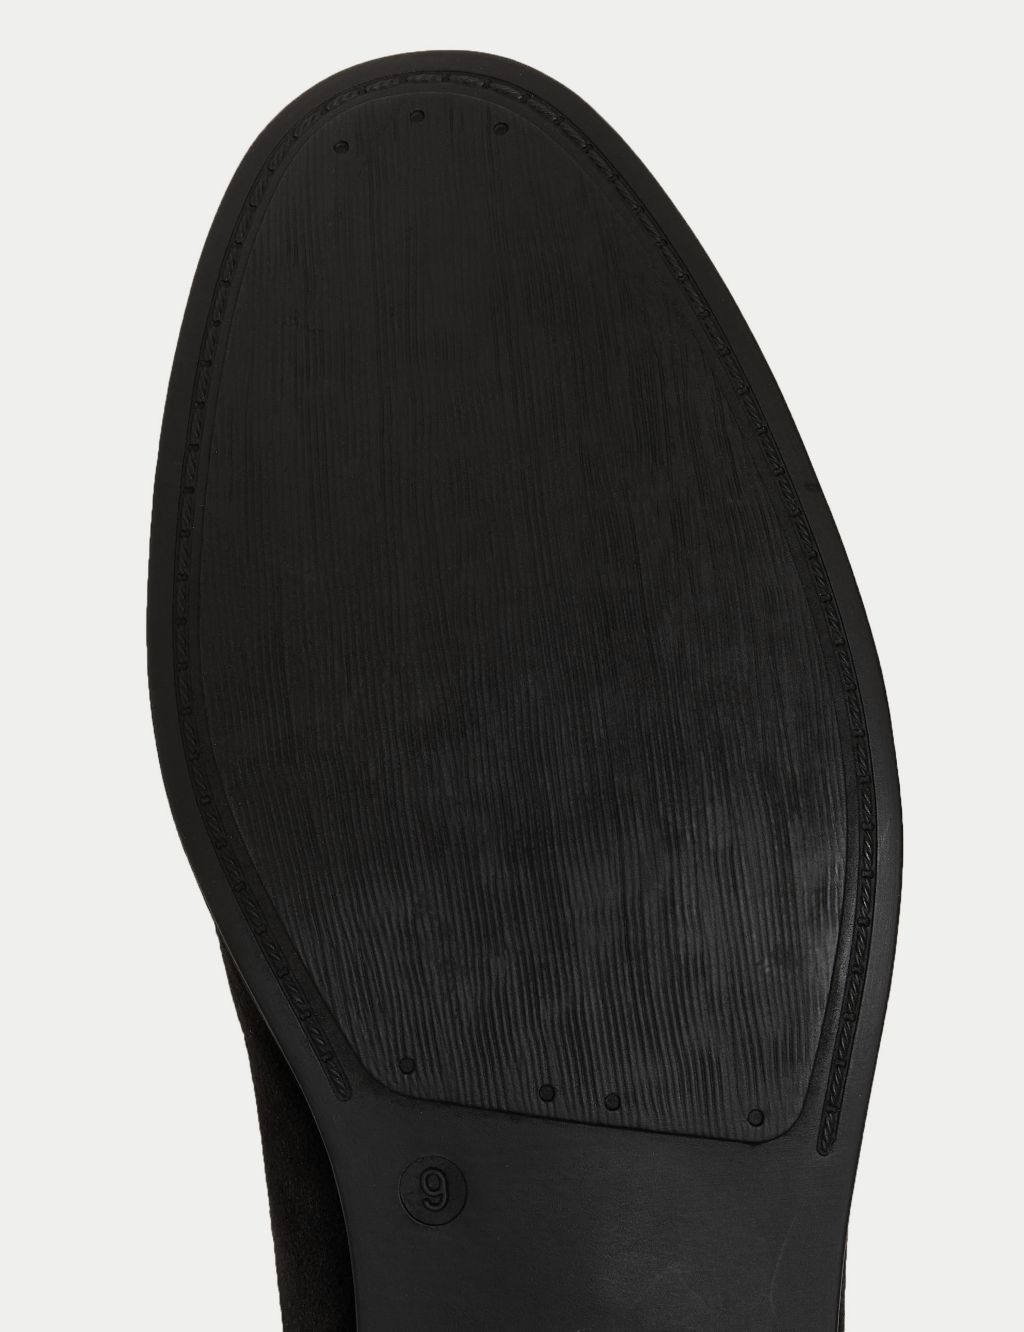 Velvet Slip-On Loafers image 4